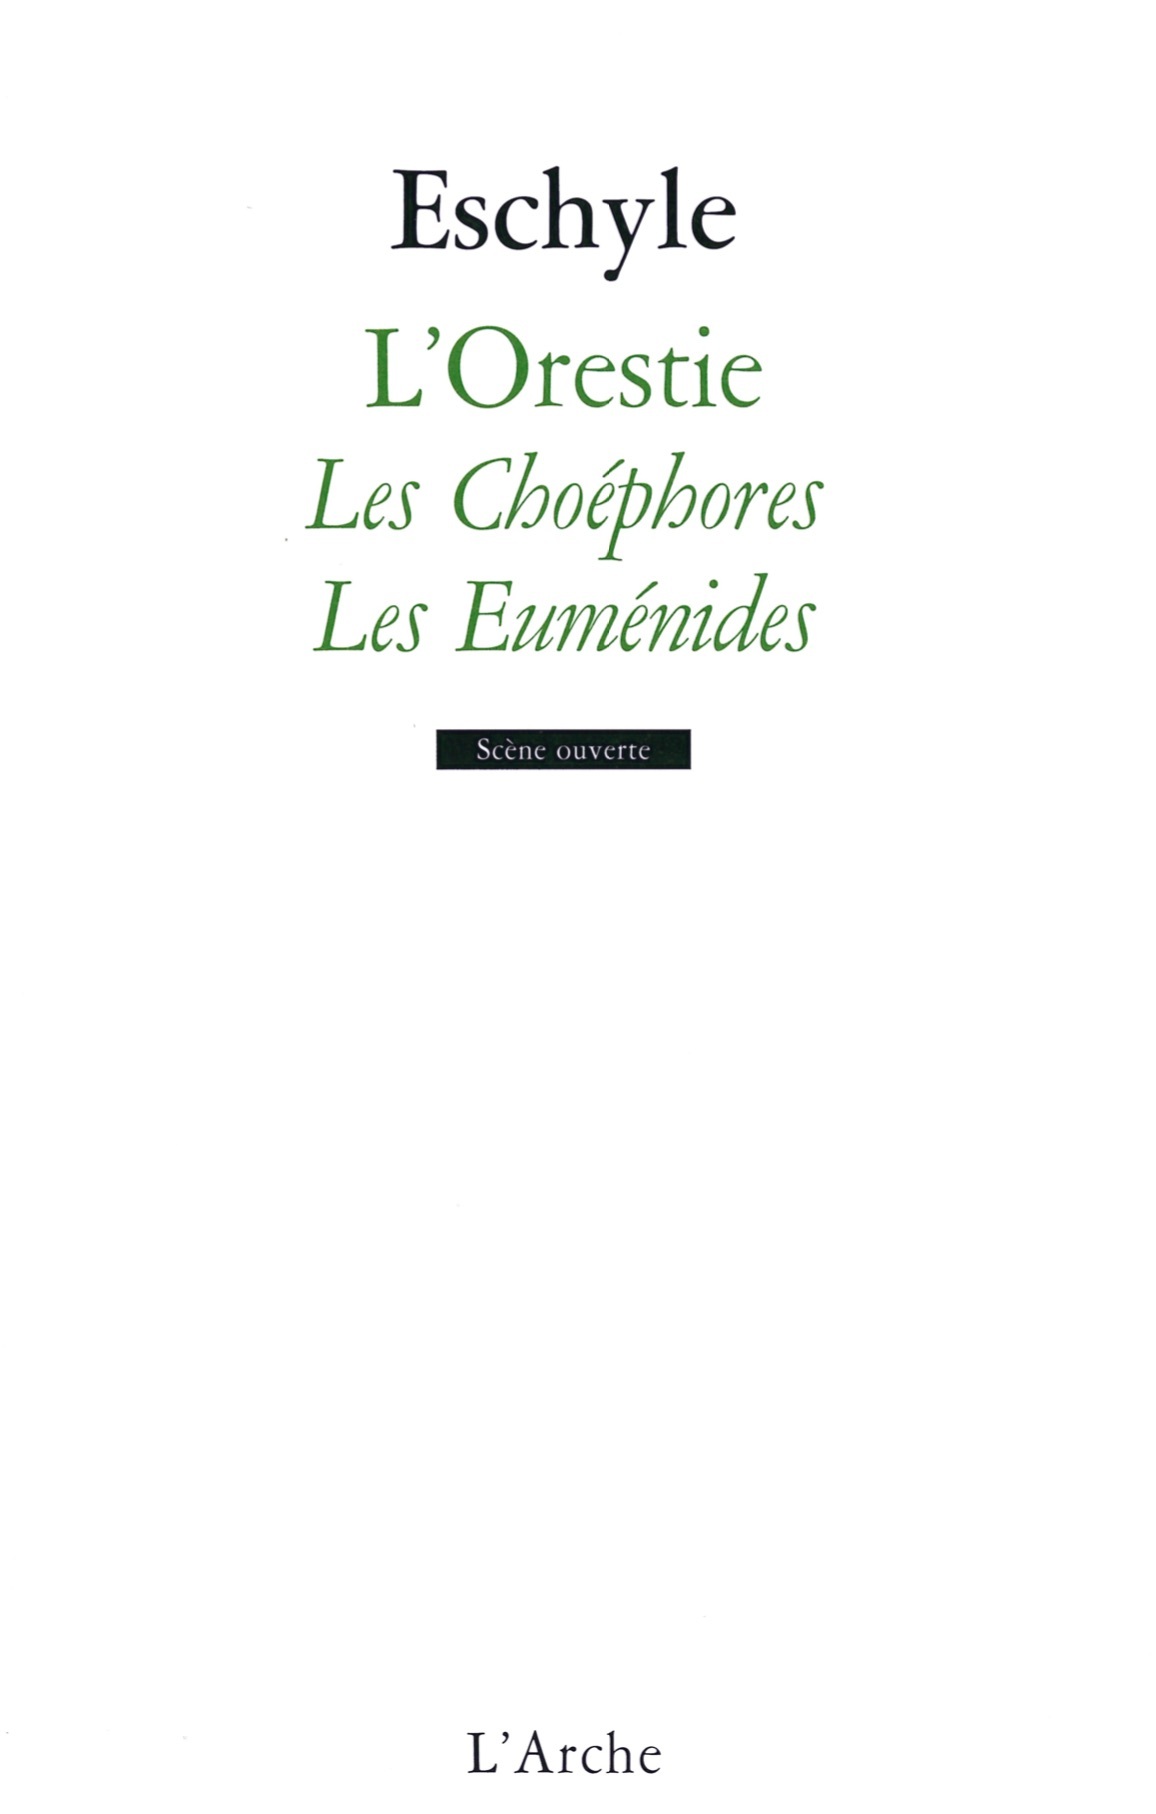 L'Orestie - Vol 2 Les Choéphores et Les Euménides (9782851818270-front-cover)